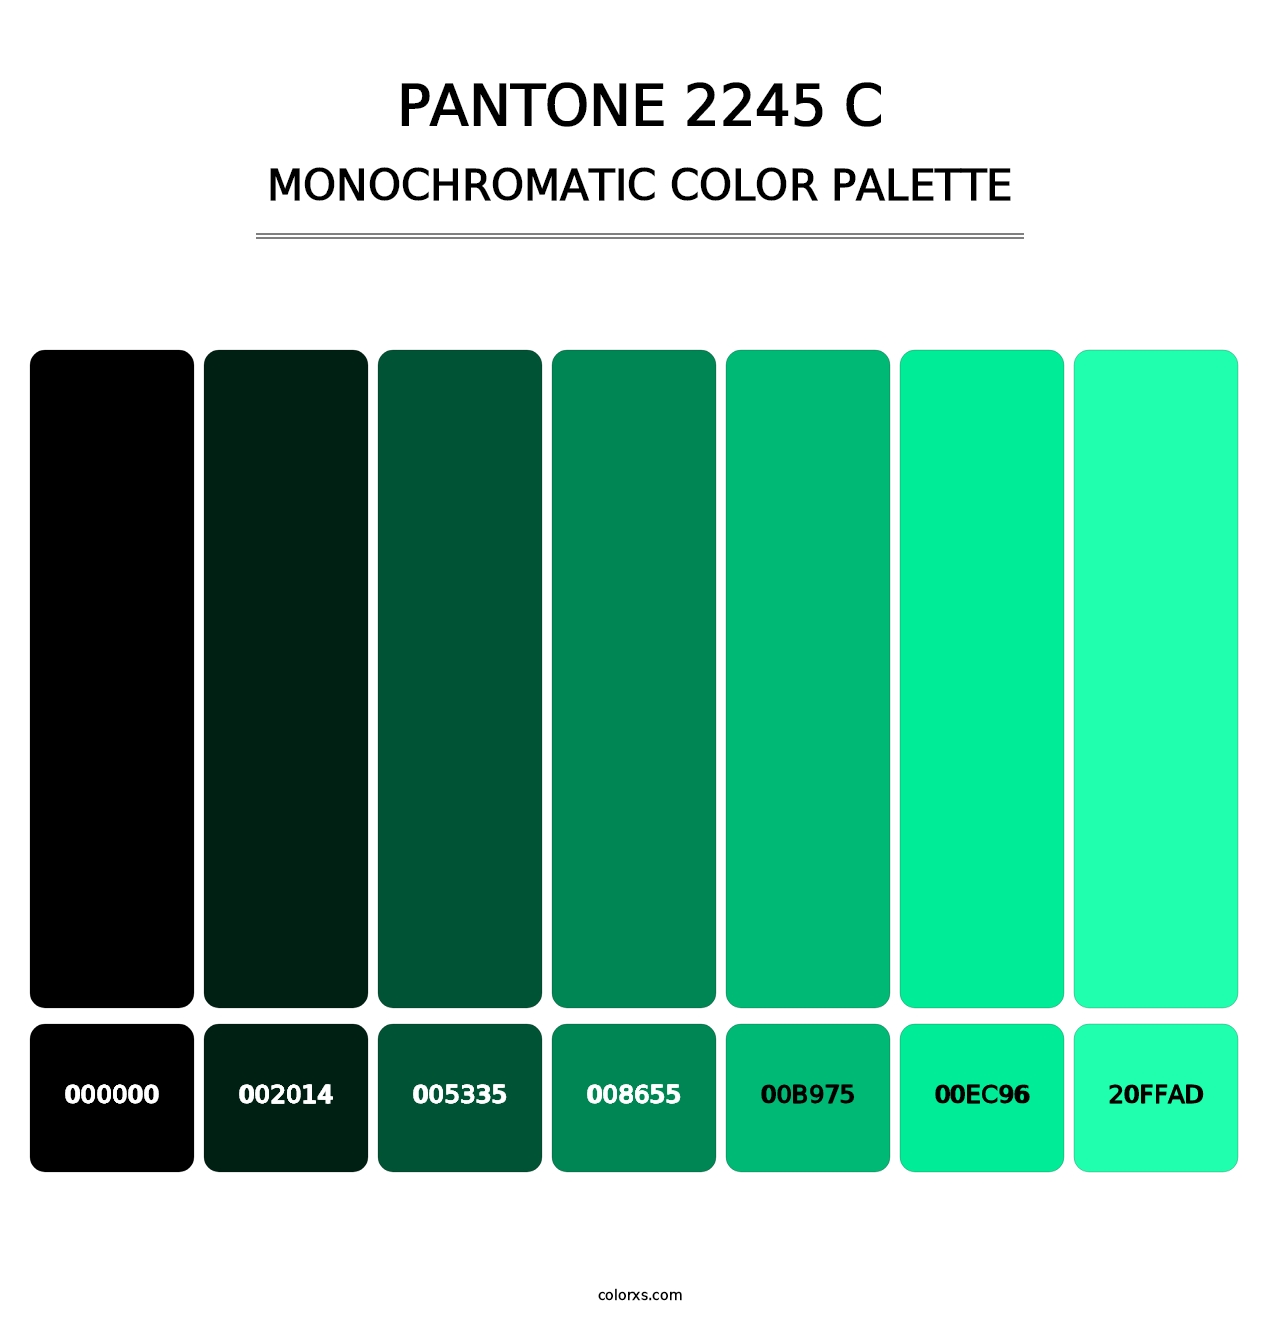 PANTONE 2245 C - Monochromatic Color Palette